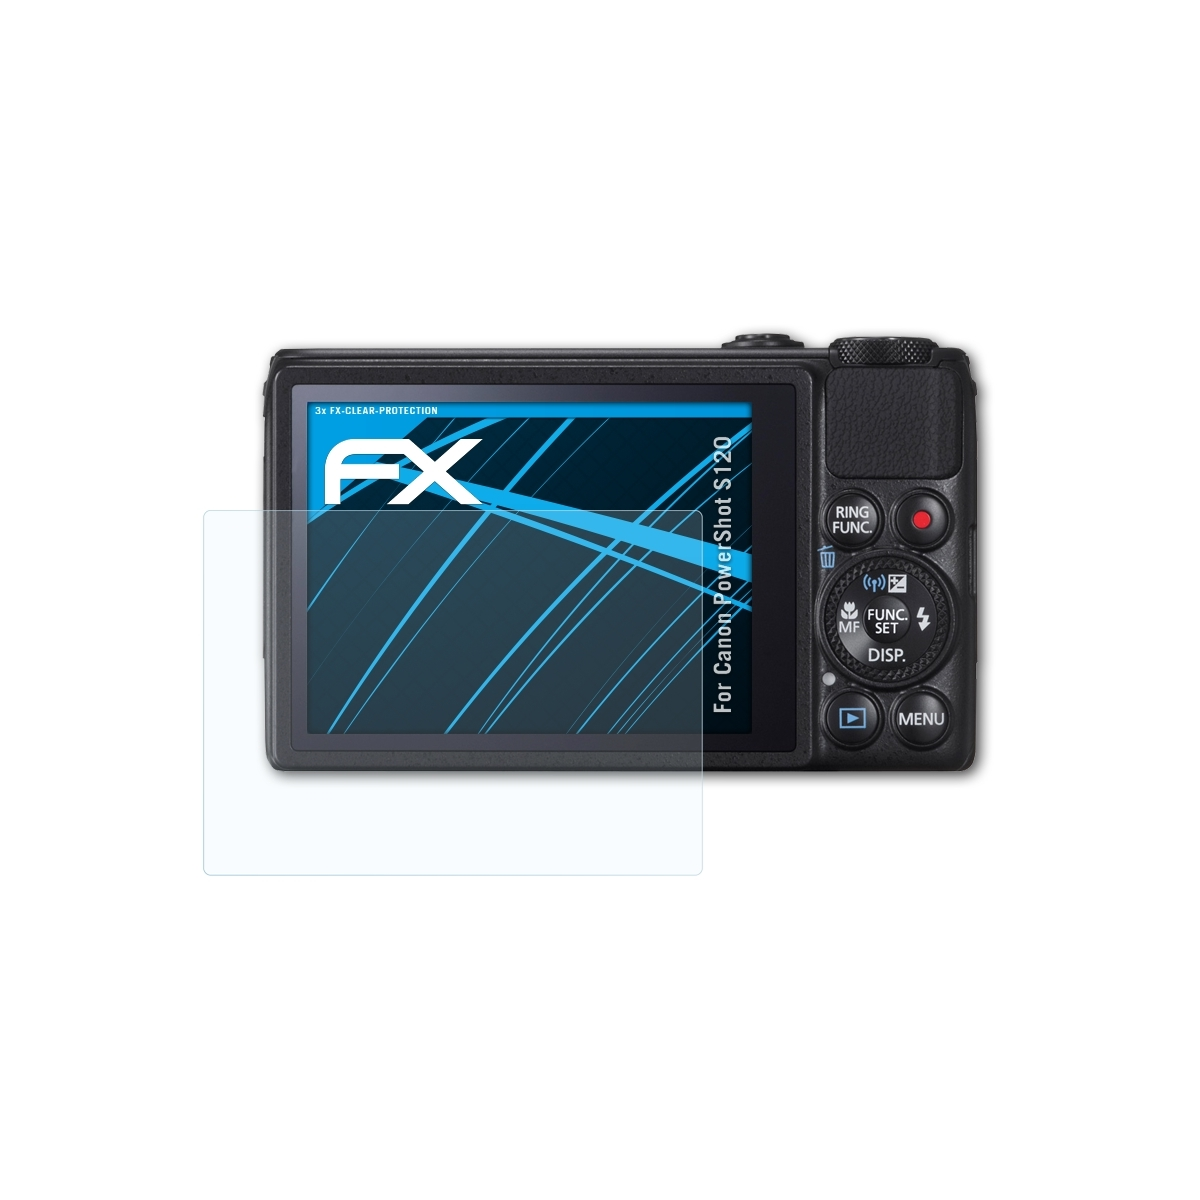 ATFOLIX 3x FX-Clear Displayschutz(für Canon S120) PowerShot